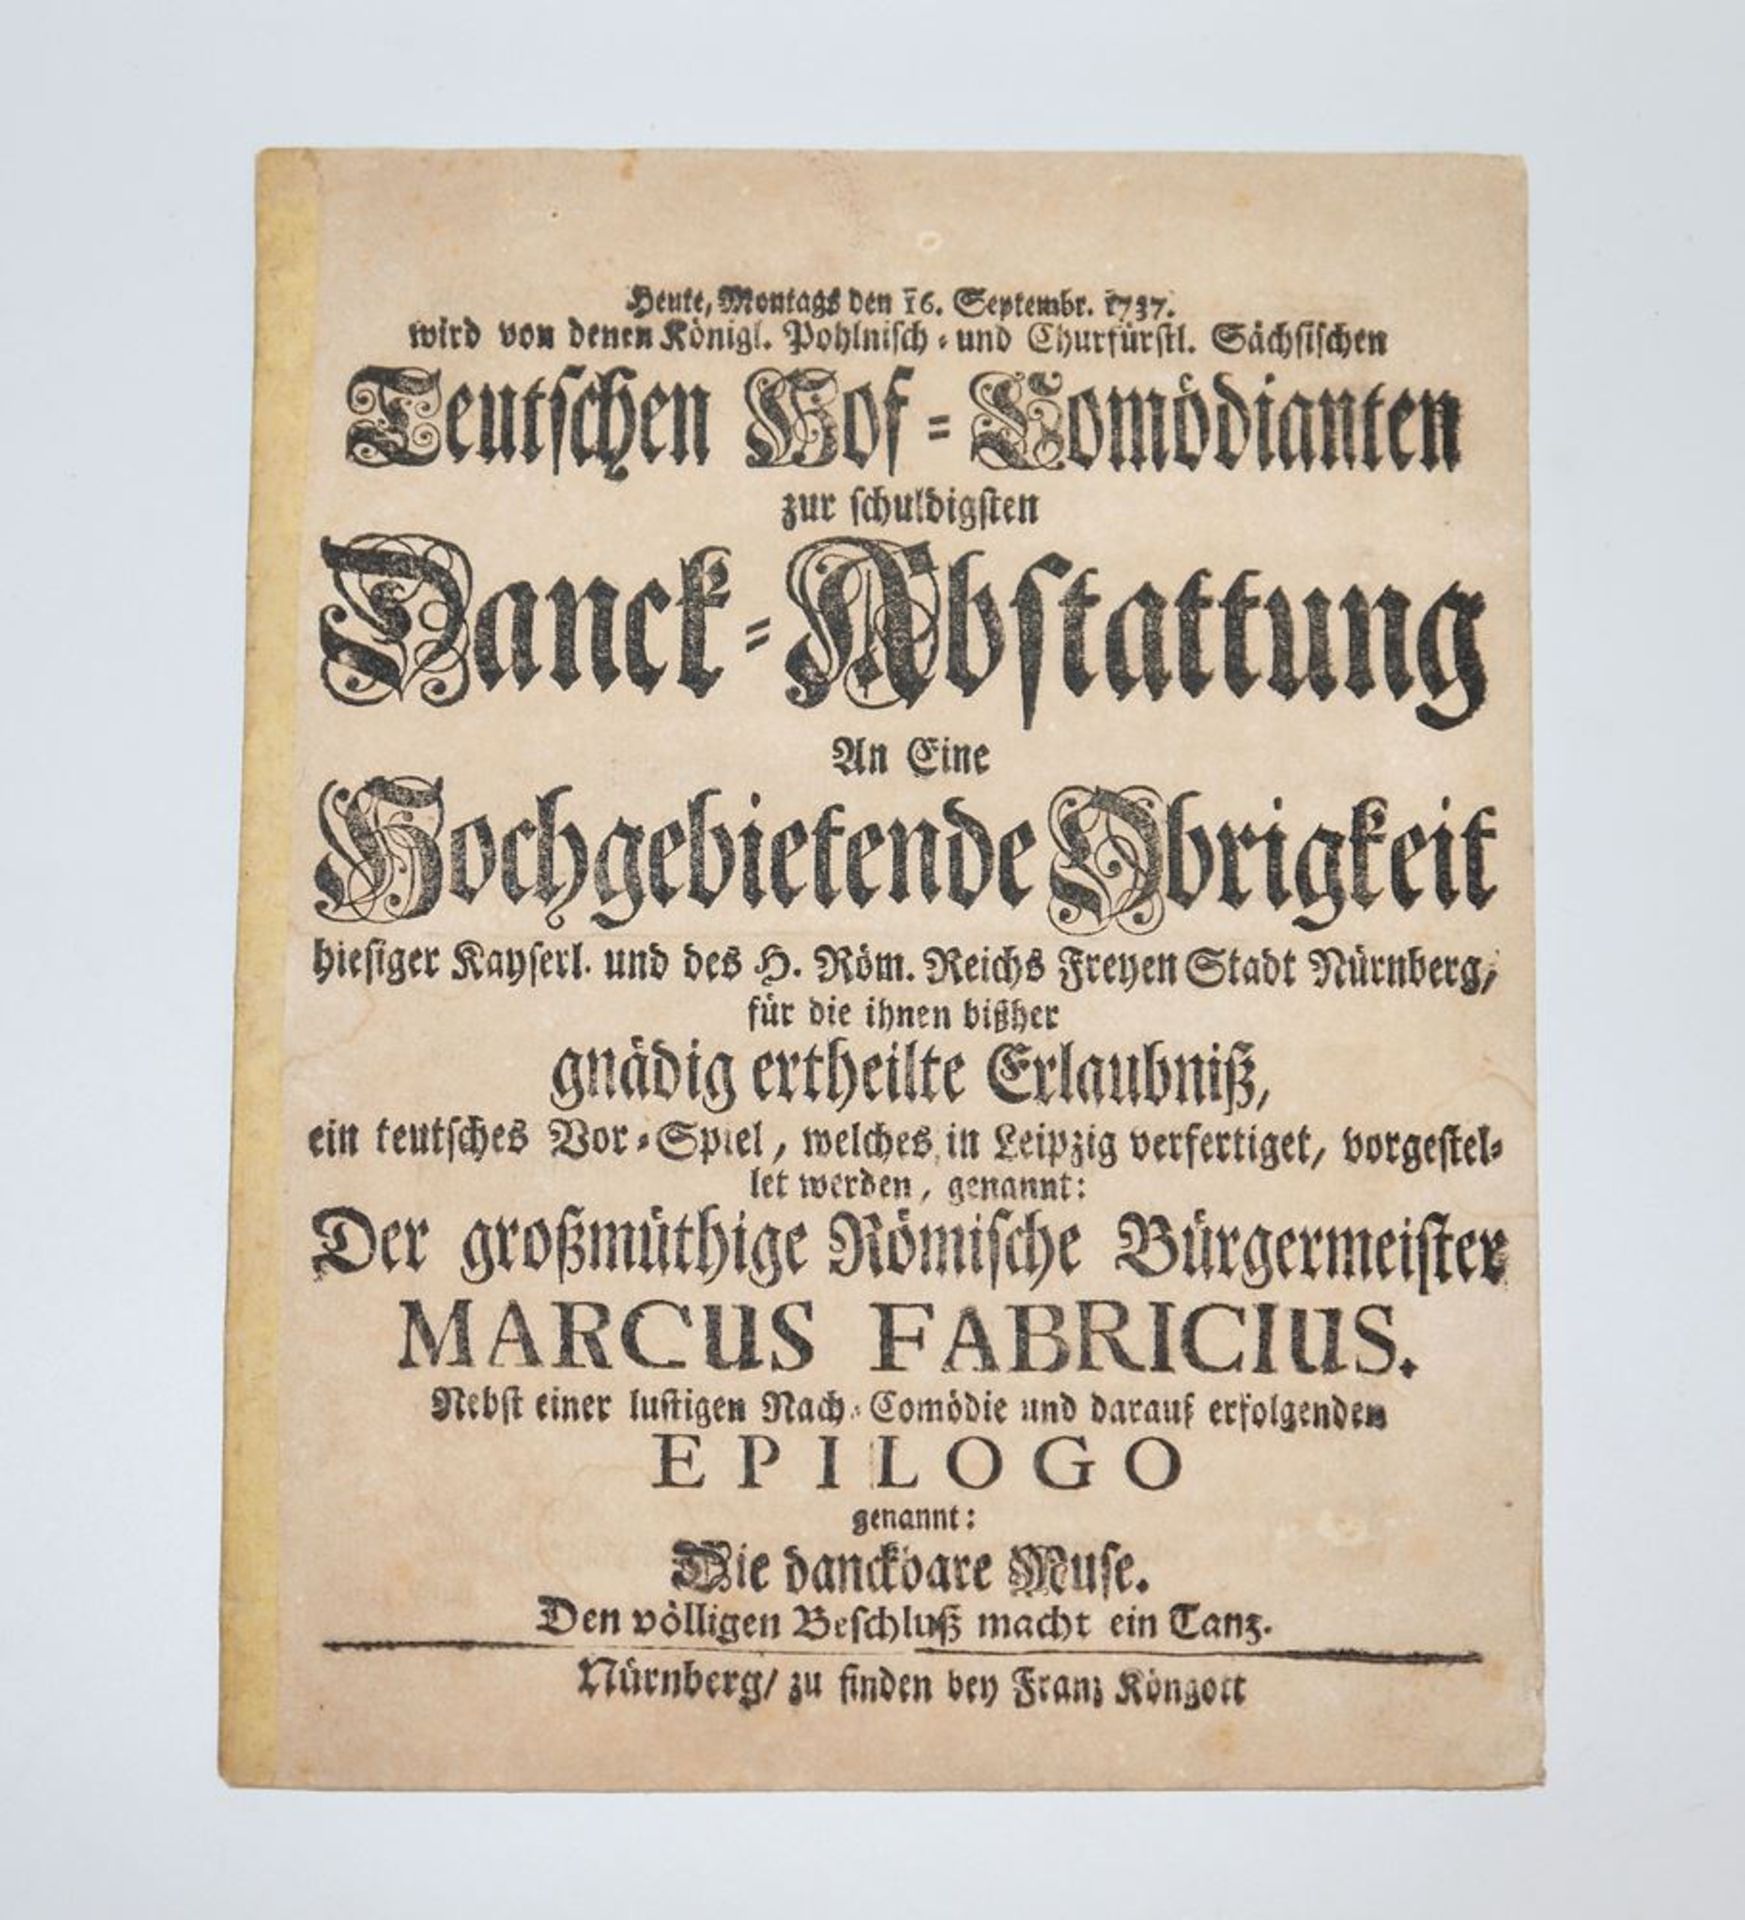 Theater-Programm ("Der großmüthige Römische Bürgermeister Marcus Fabricius"), Nürnberg 16. Septembe